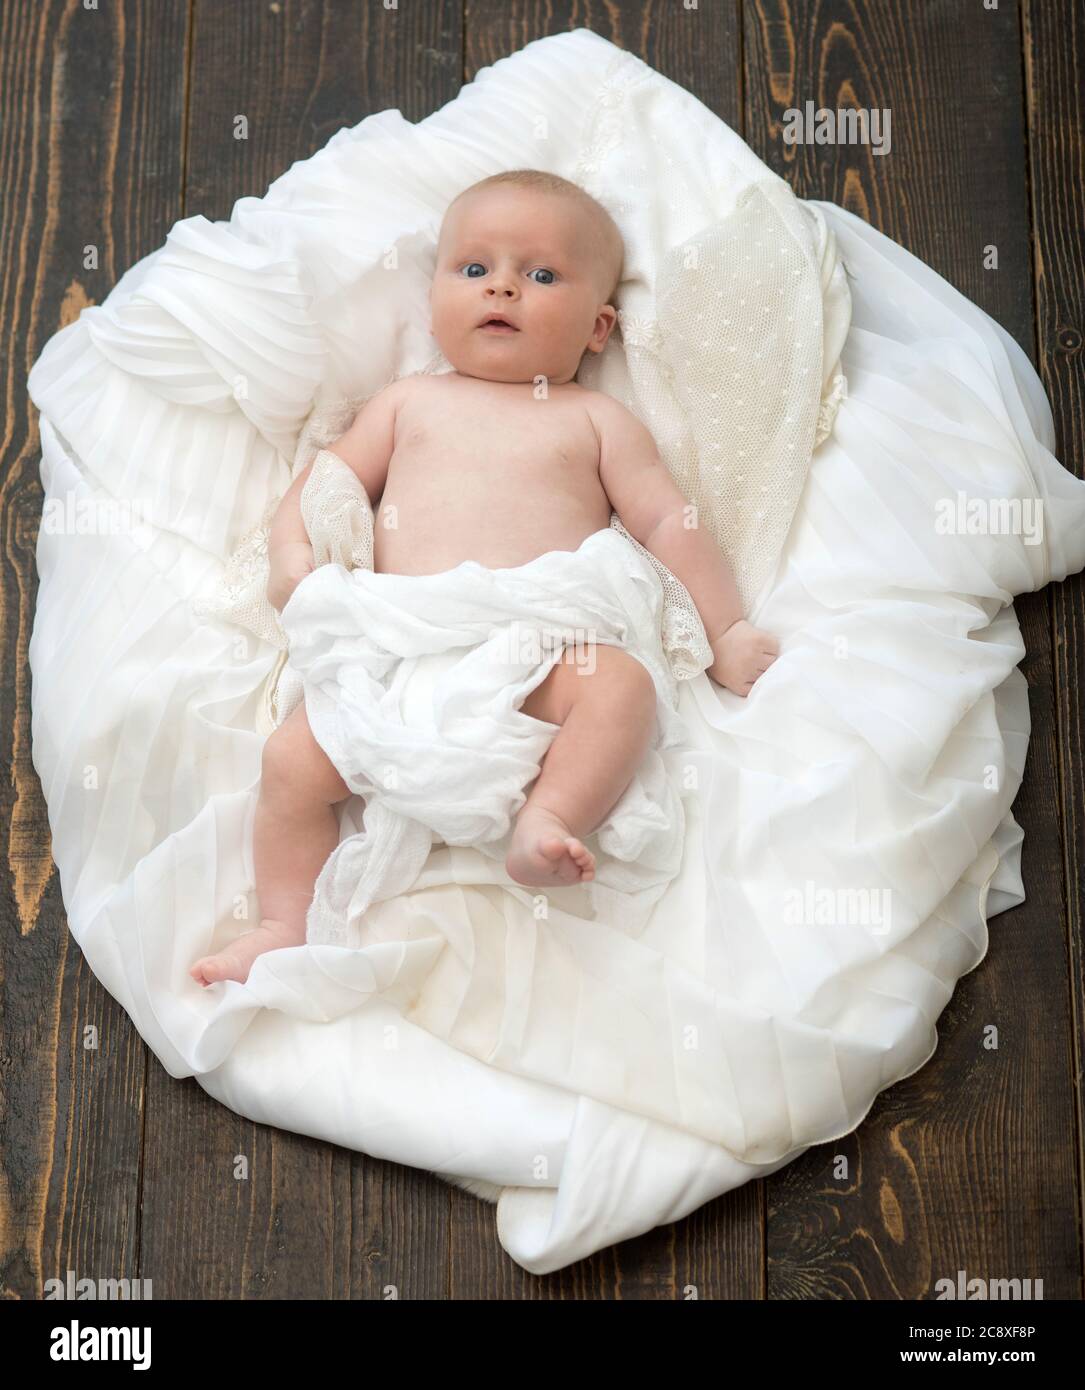 Bebé cubierto con manta blanca. Concepto de infancia e inocencia. Bebé  tumbado sobre un suave edredón blanco diseñado como nube o nido. Niño recién  nacido con ojos azules y cara curiosa sobre